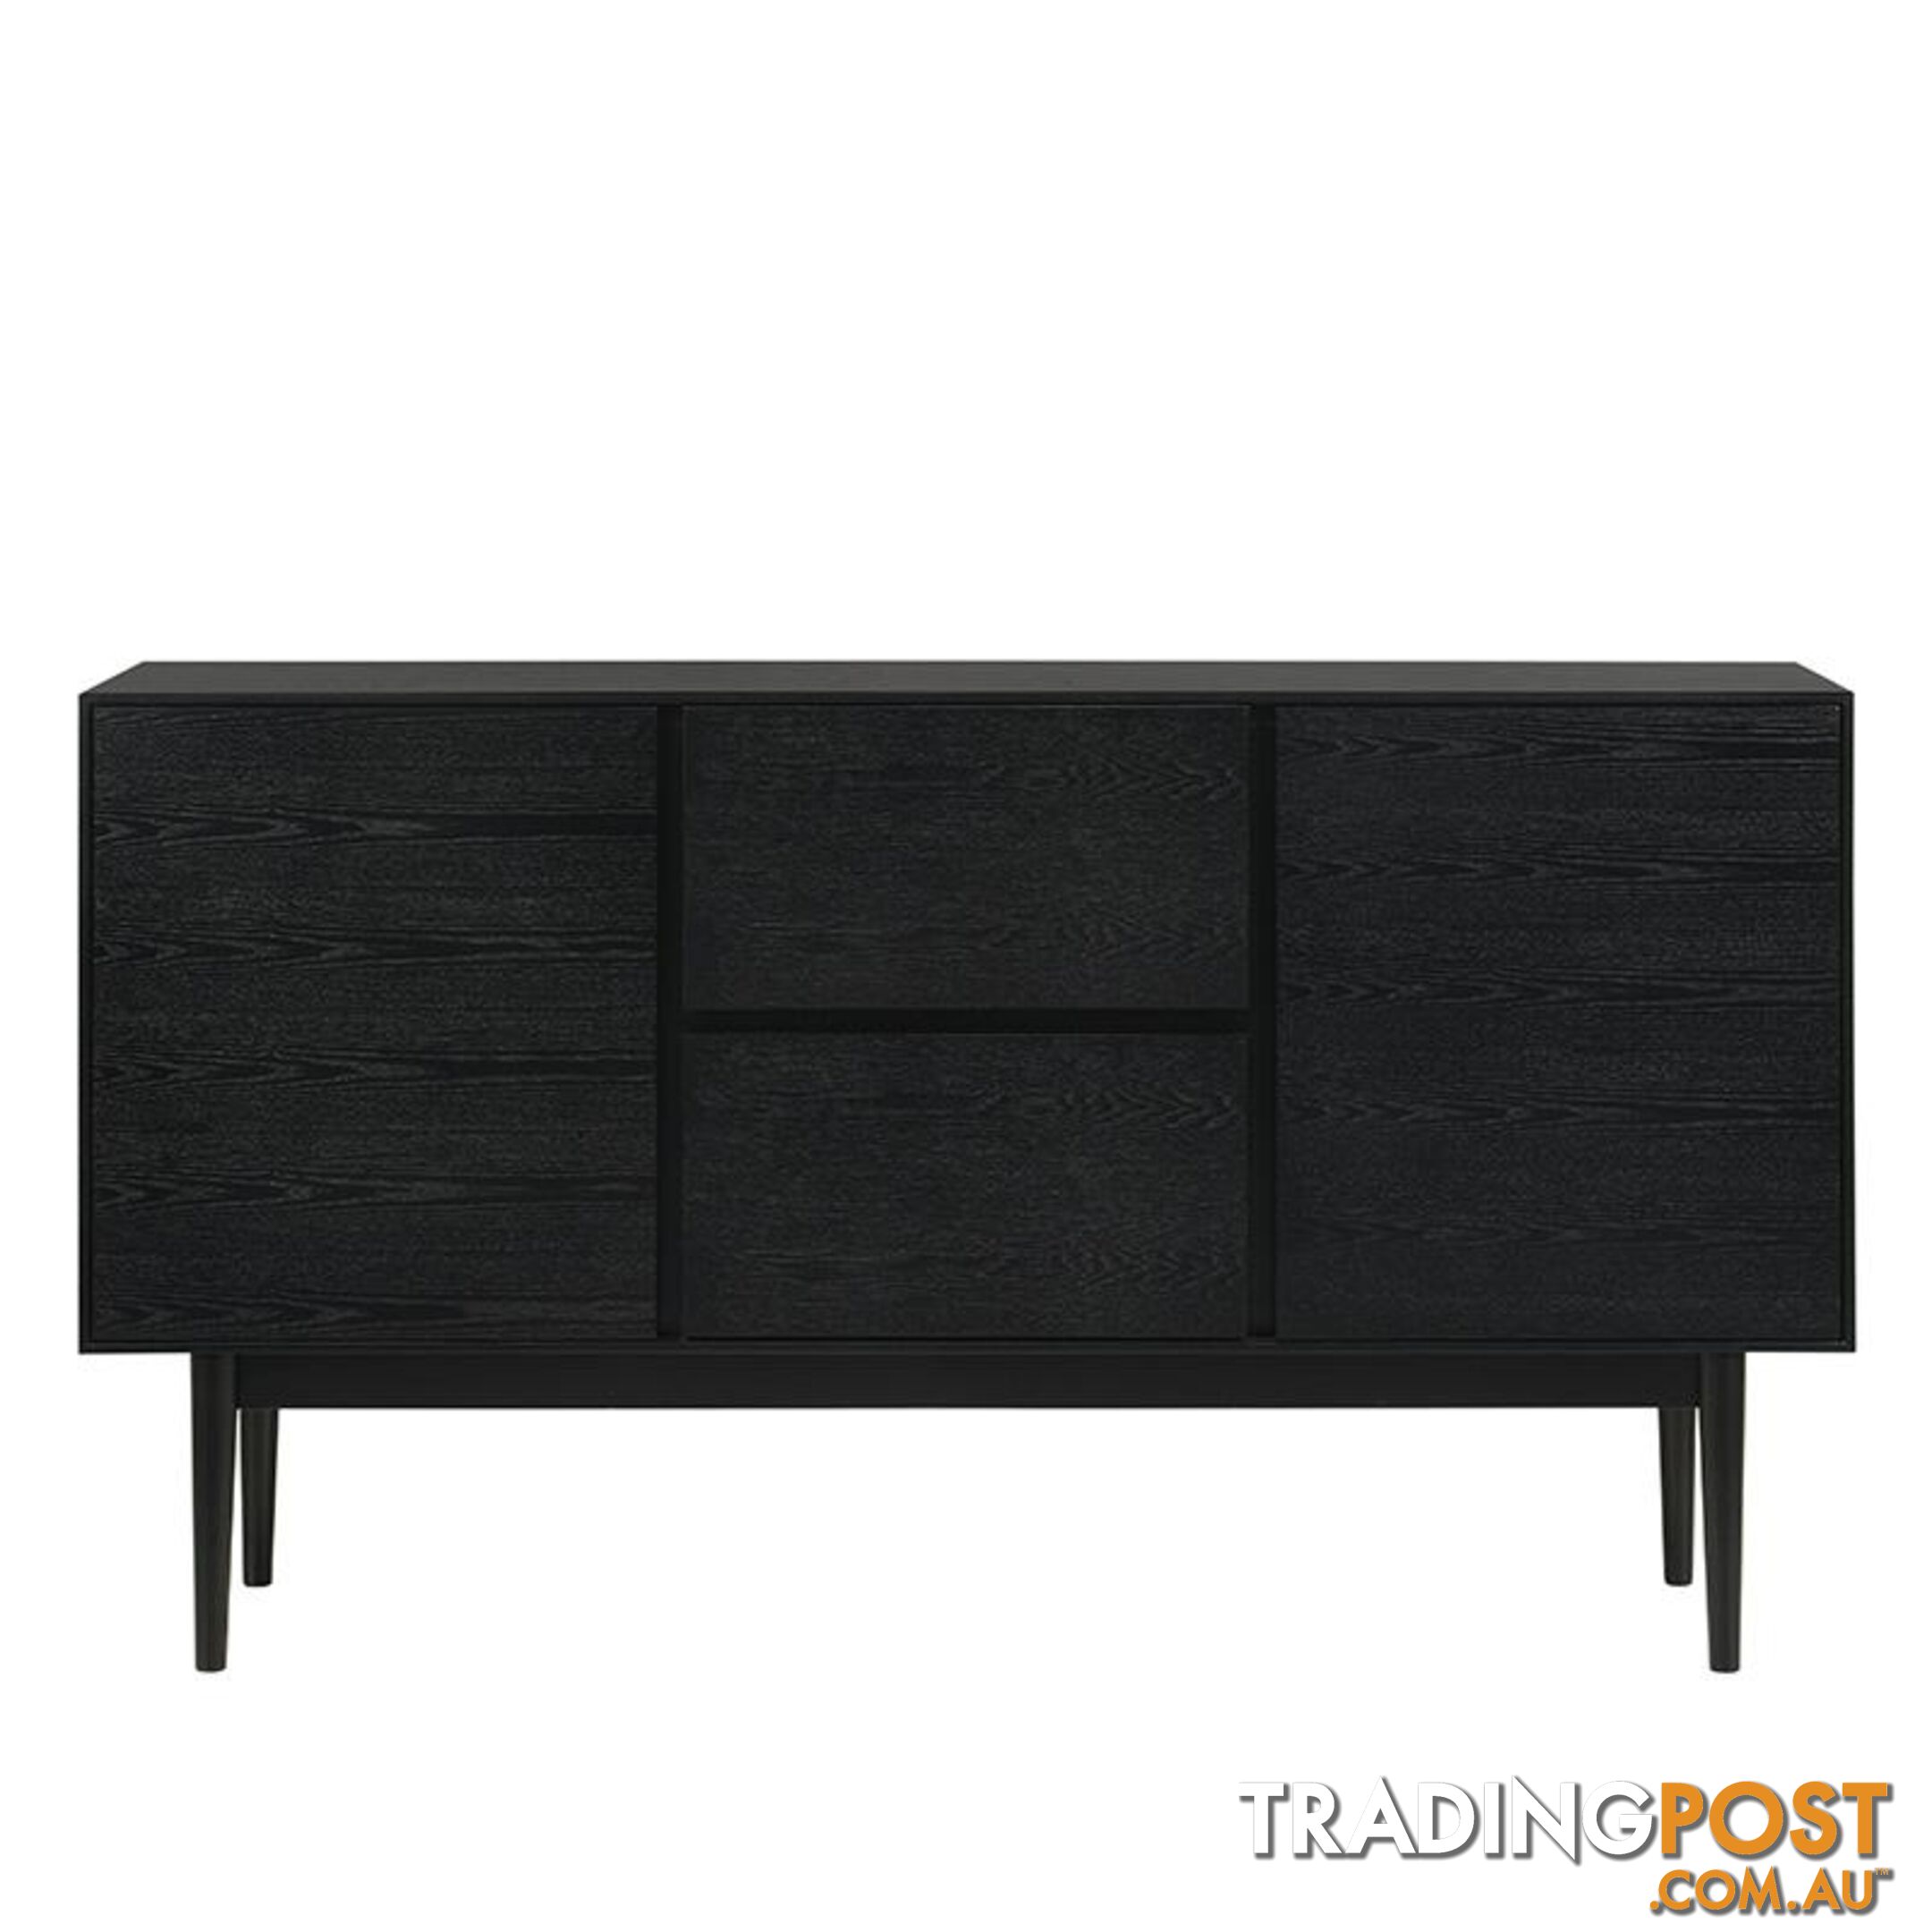 FANGO Sideboard 150cm - Black - IVS-5188 - 9334719007465